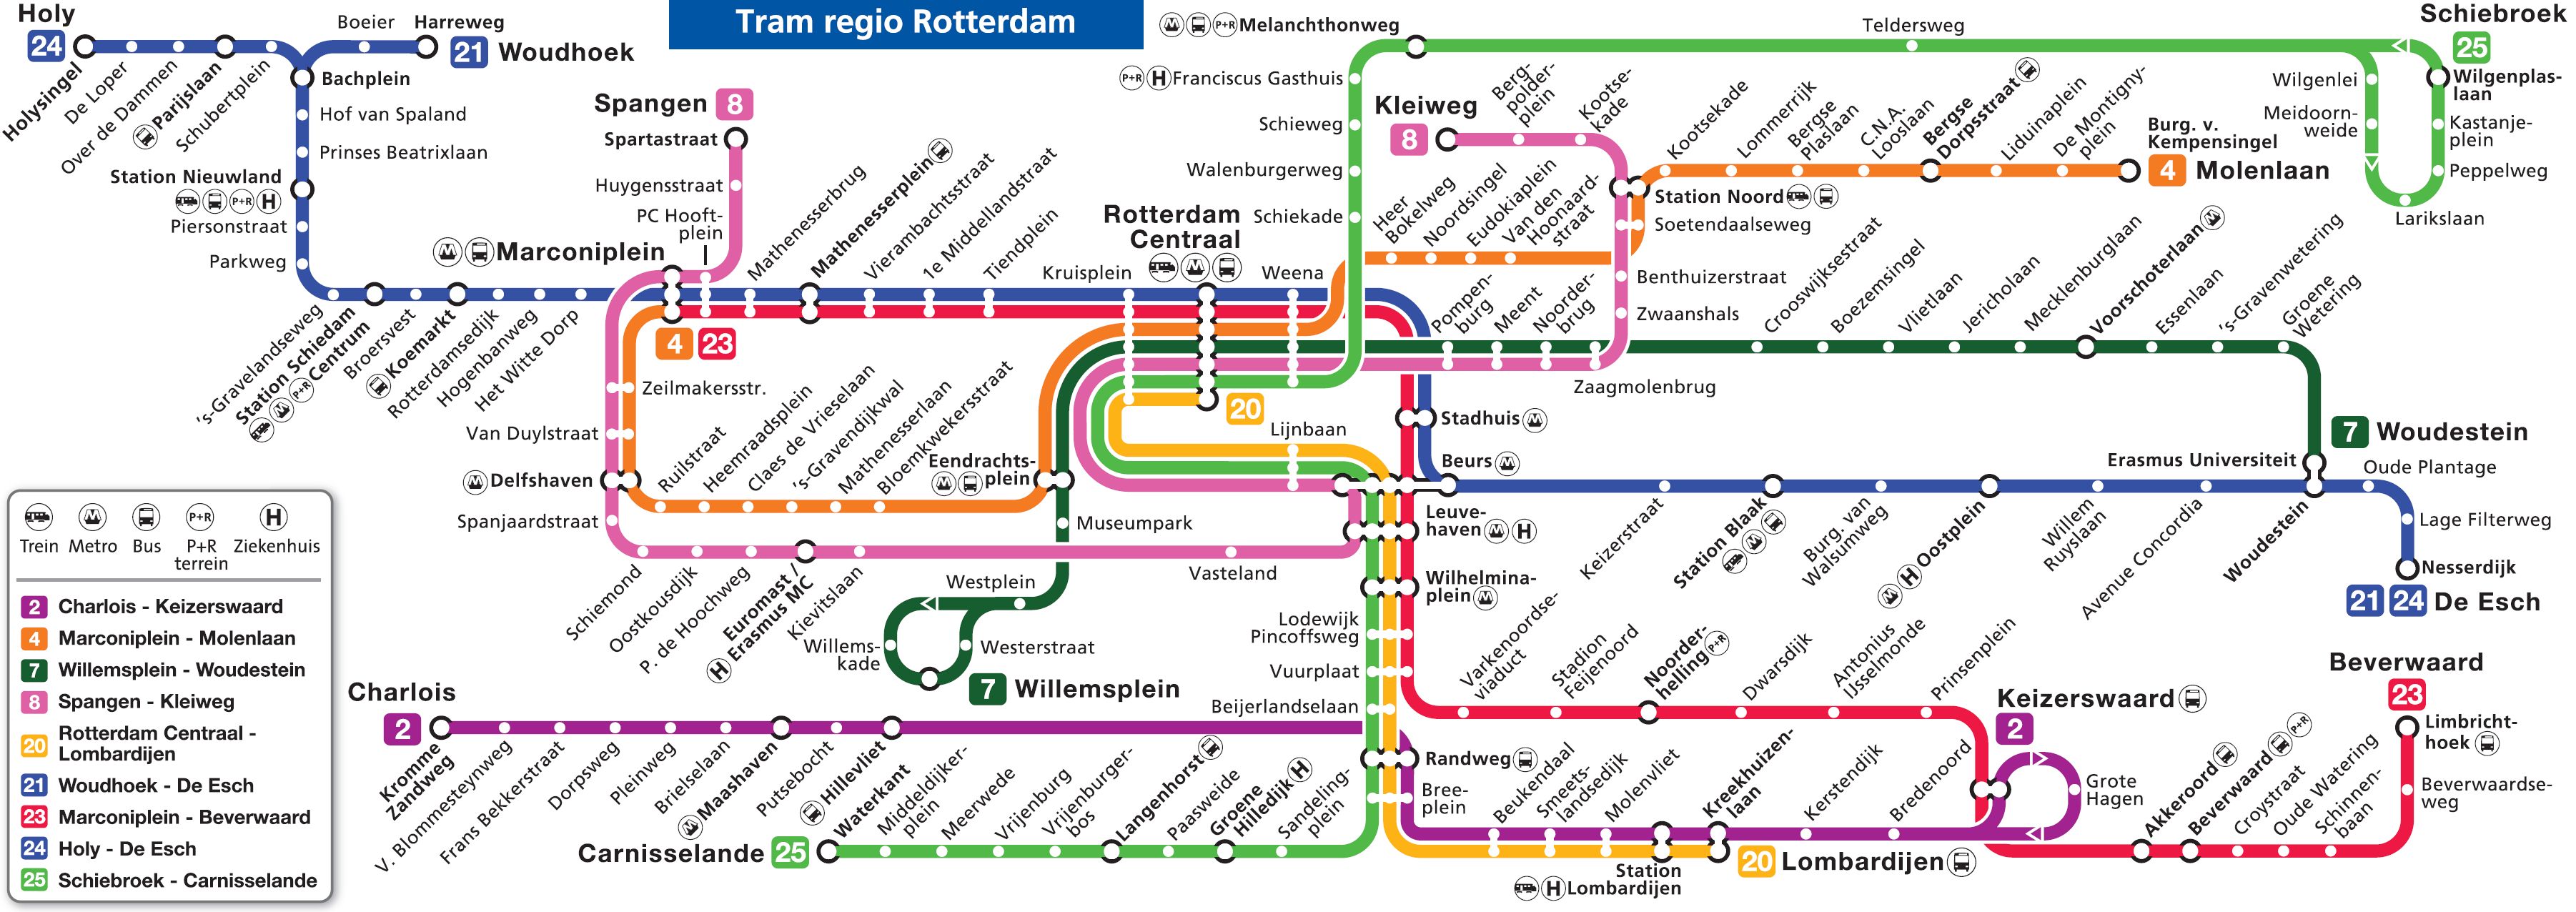 map of rotterdam